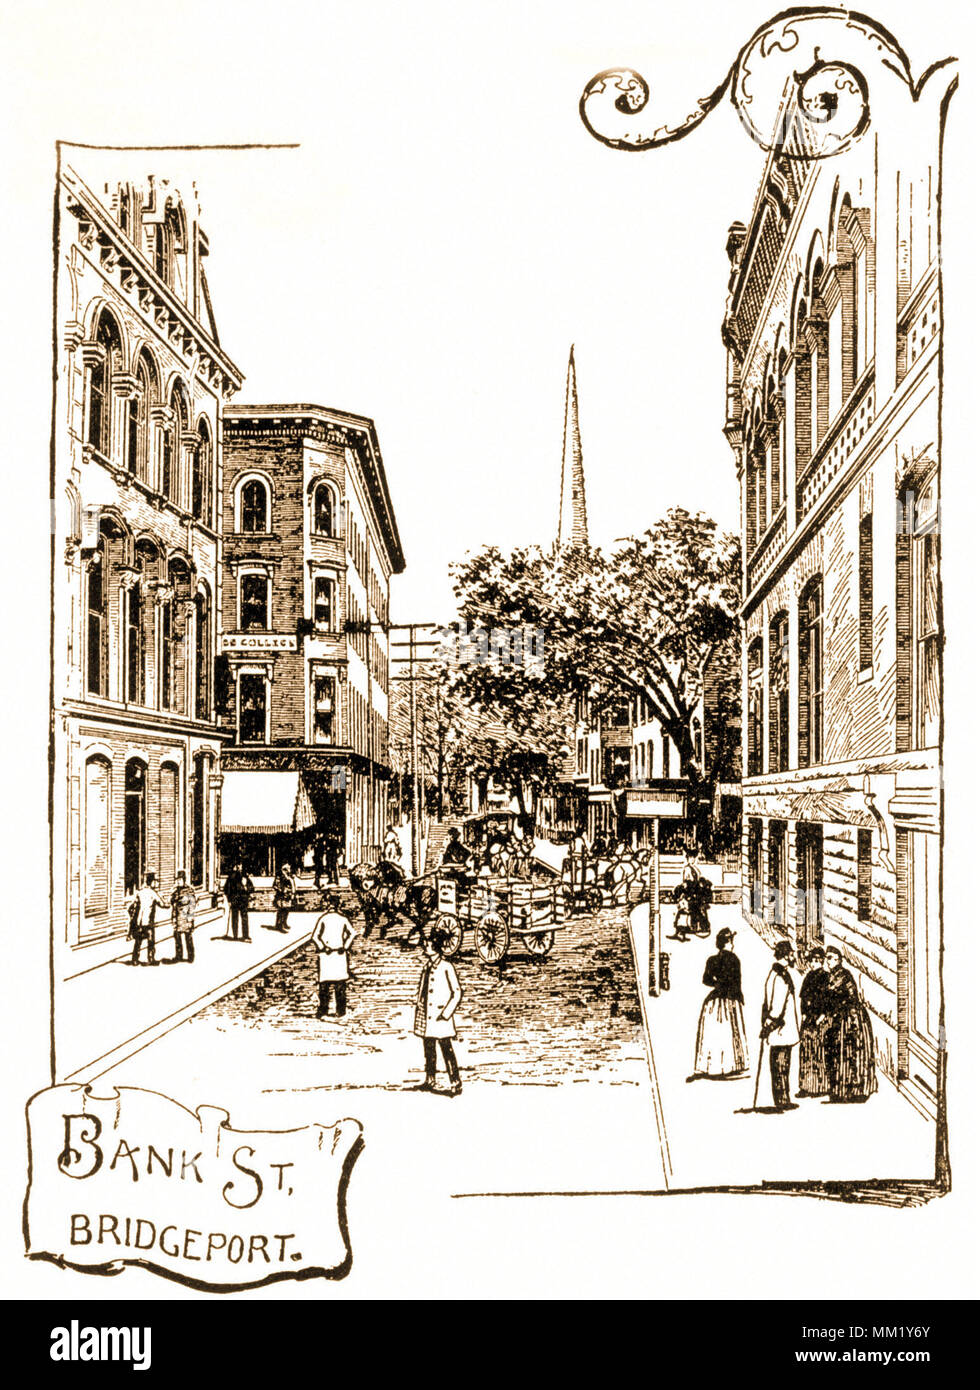 View of Bank Street Looking West. Bridgeport. 1890 Stock Photo